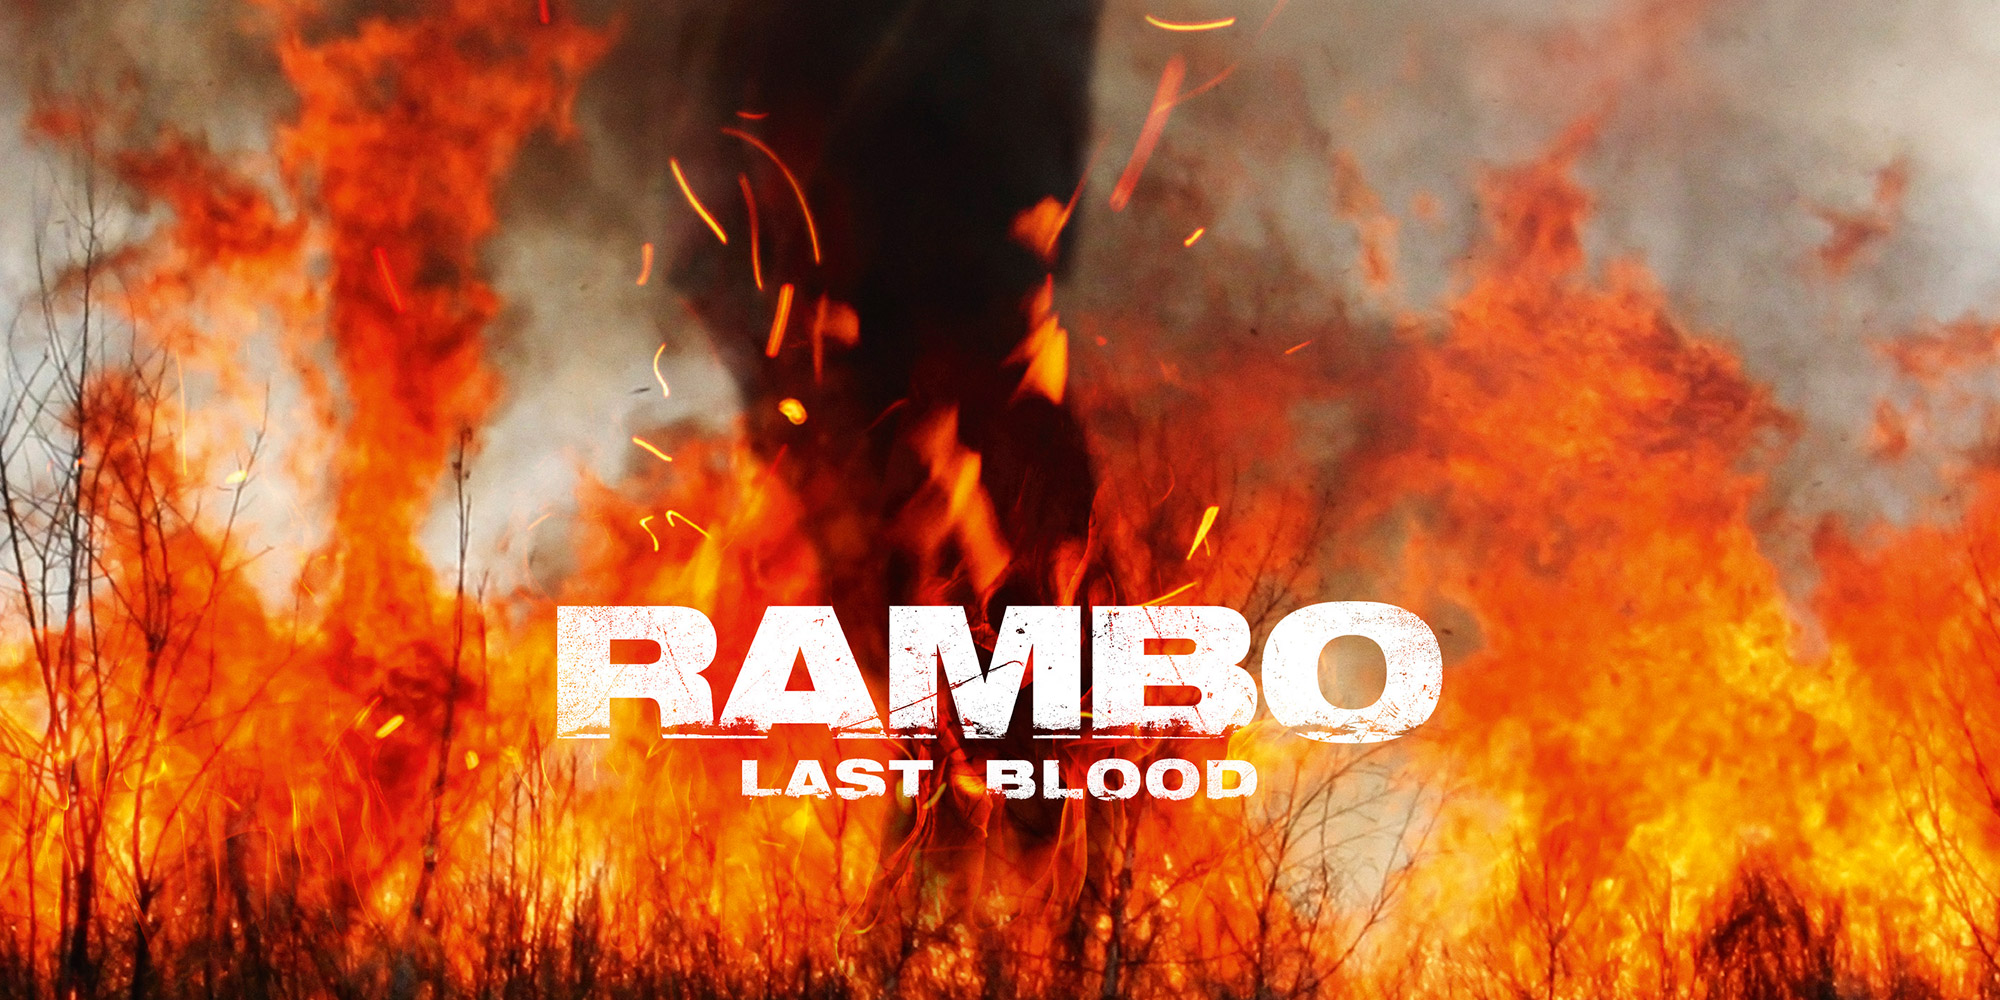  Rambo est de retour et il n’est pas content…